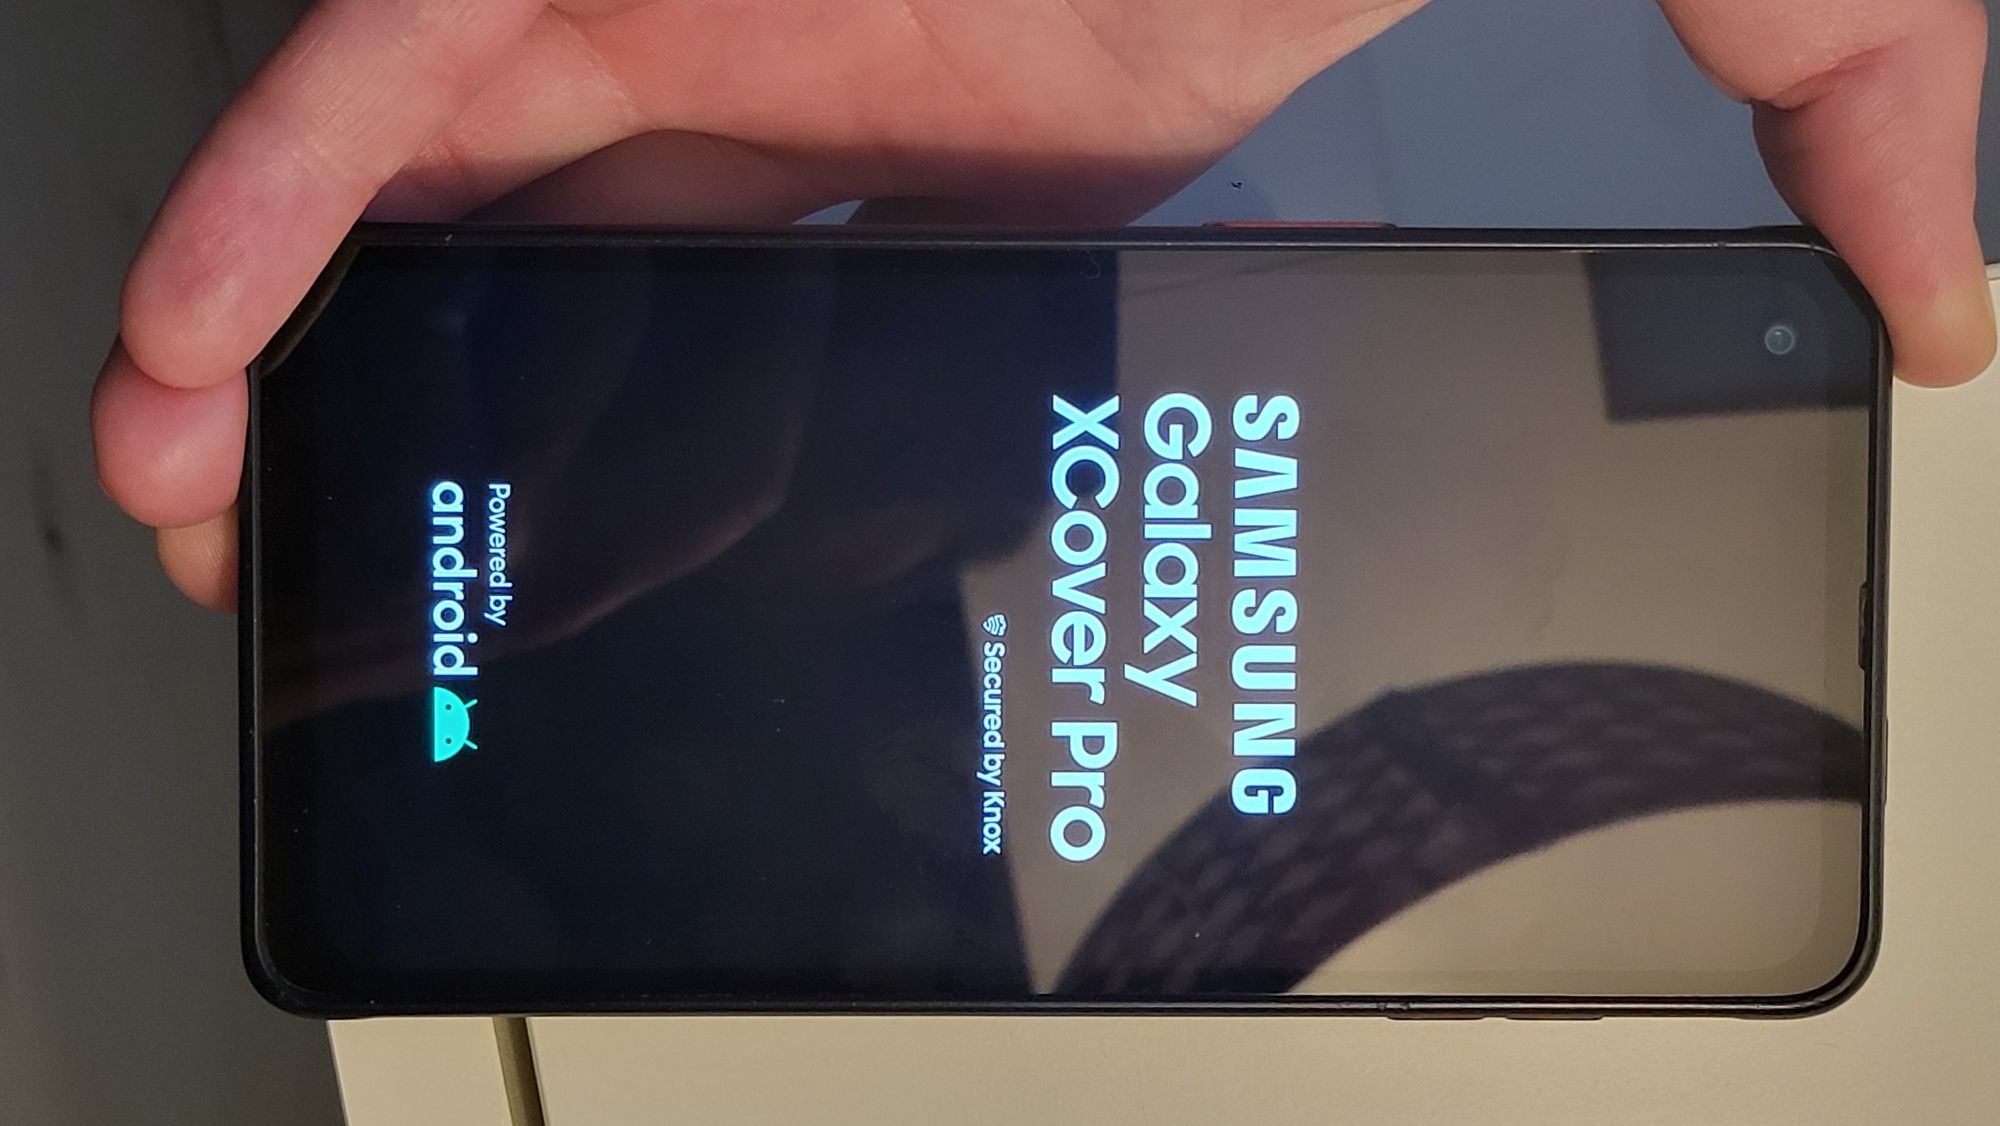 Samsung Xcover Pro SM-G715FN do naprawy lub na części